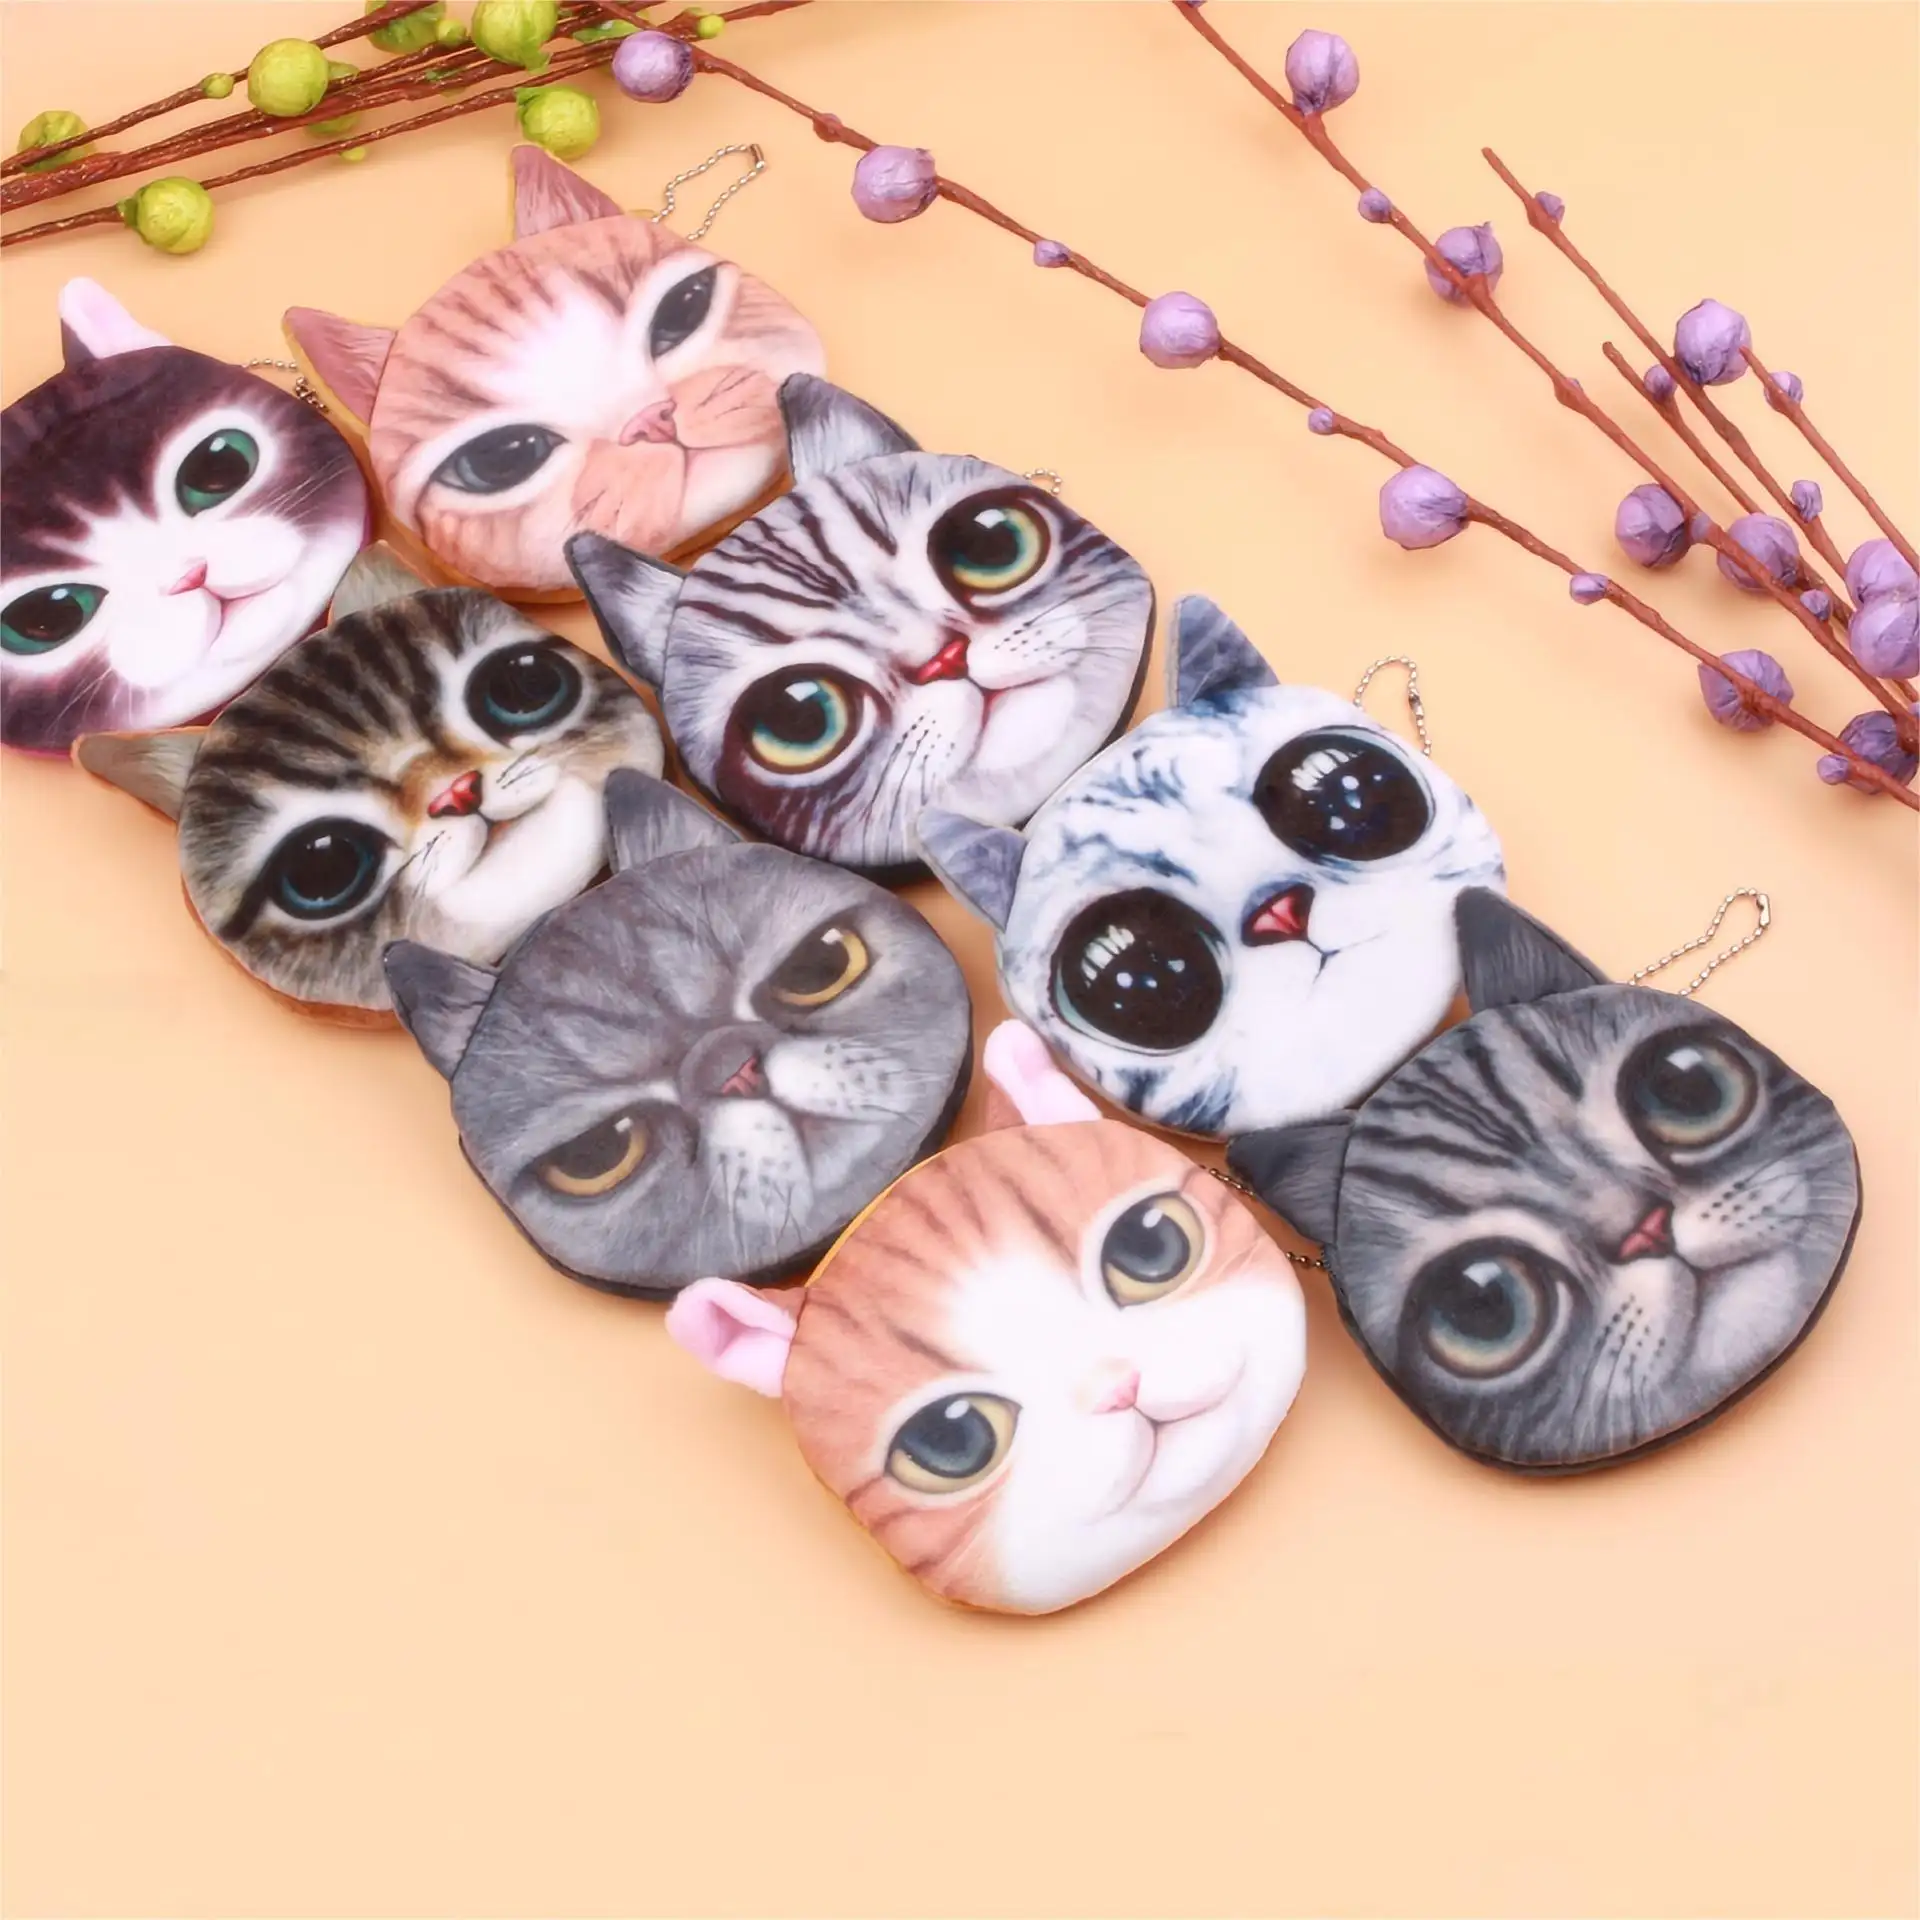 Vente en gros de nouveaux produits sacs en toile fantaisie design chat de différentes couleurs Mini porte-monnaie porte-clés portefeuille pour enfants fille